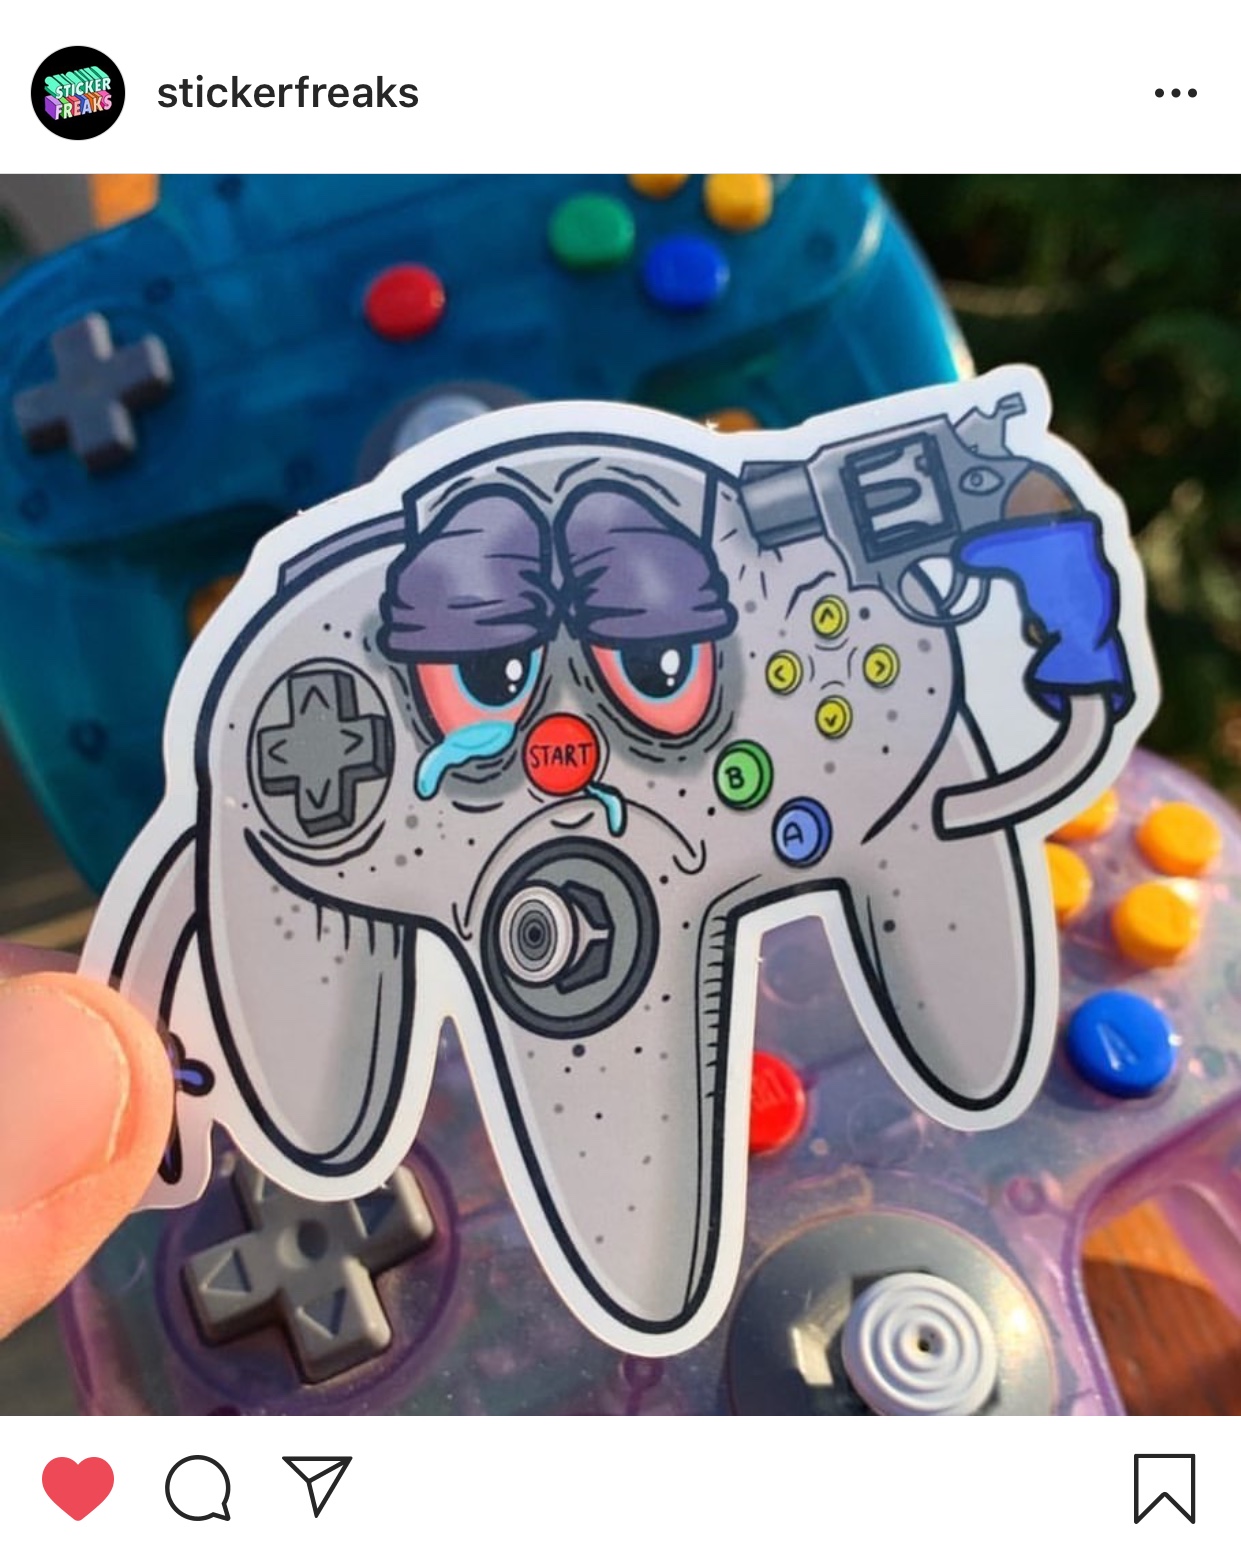 game controller - Sticker stickerfreaks Freaks Start oo